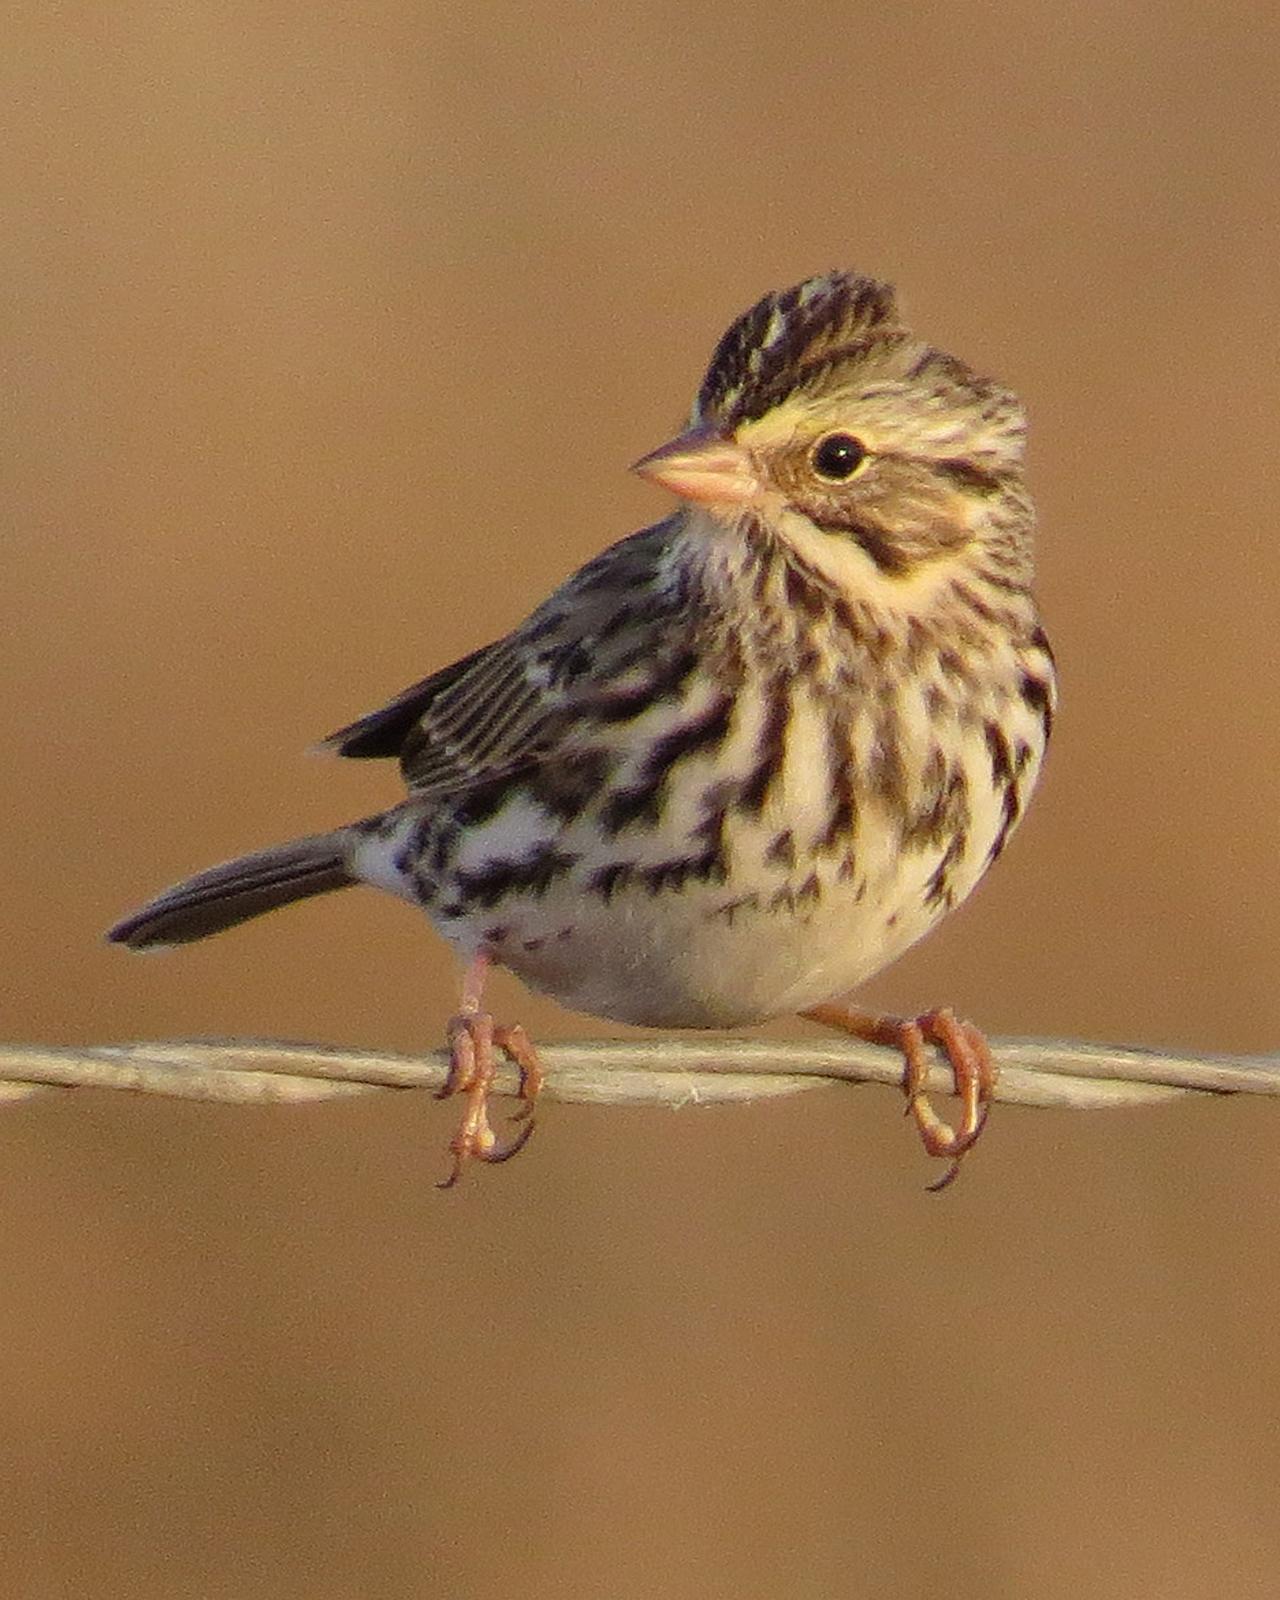 Savannah Sparrow Photo by Mary Ann Melton